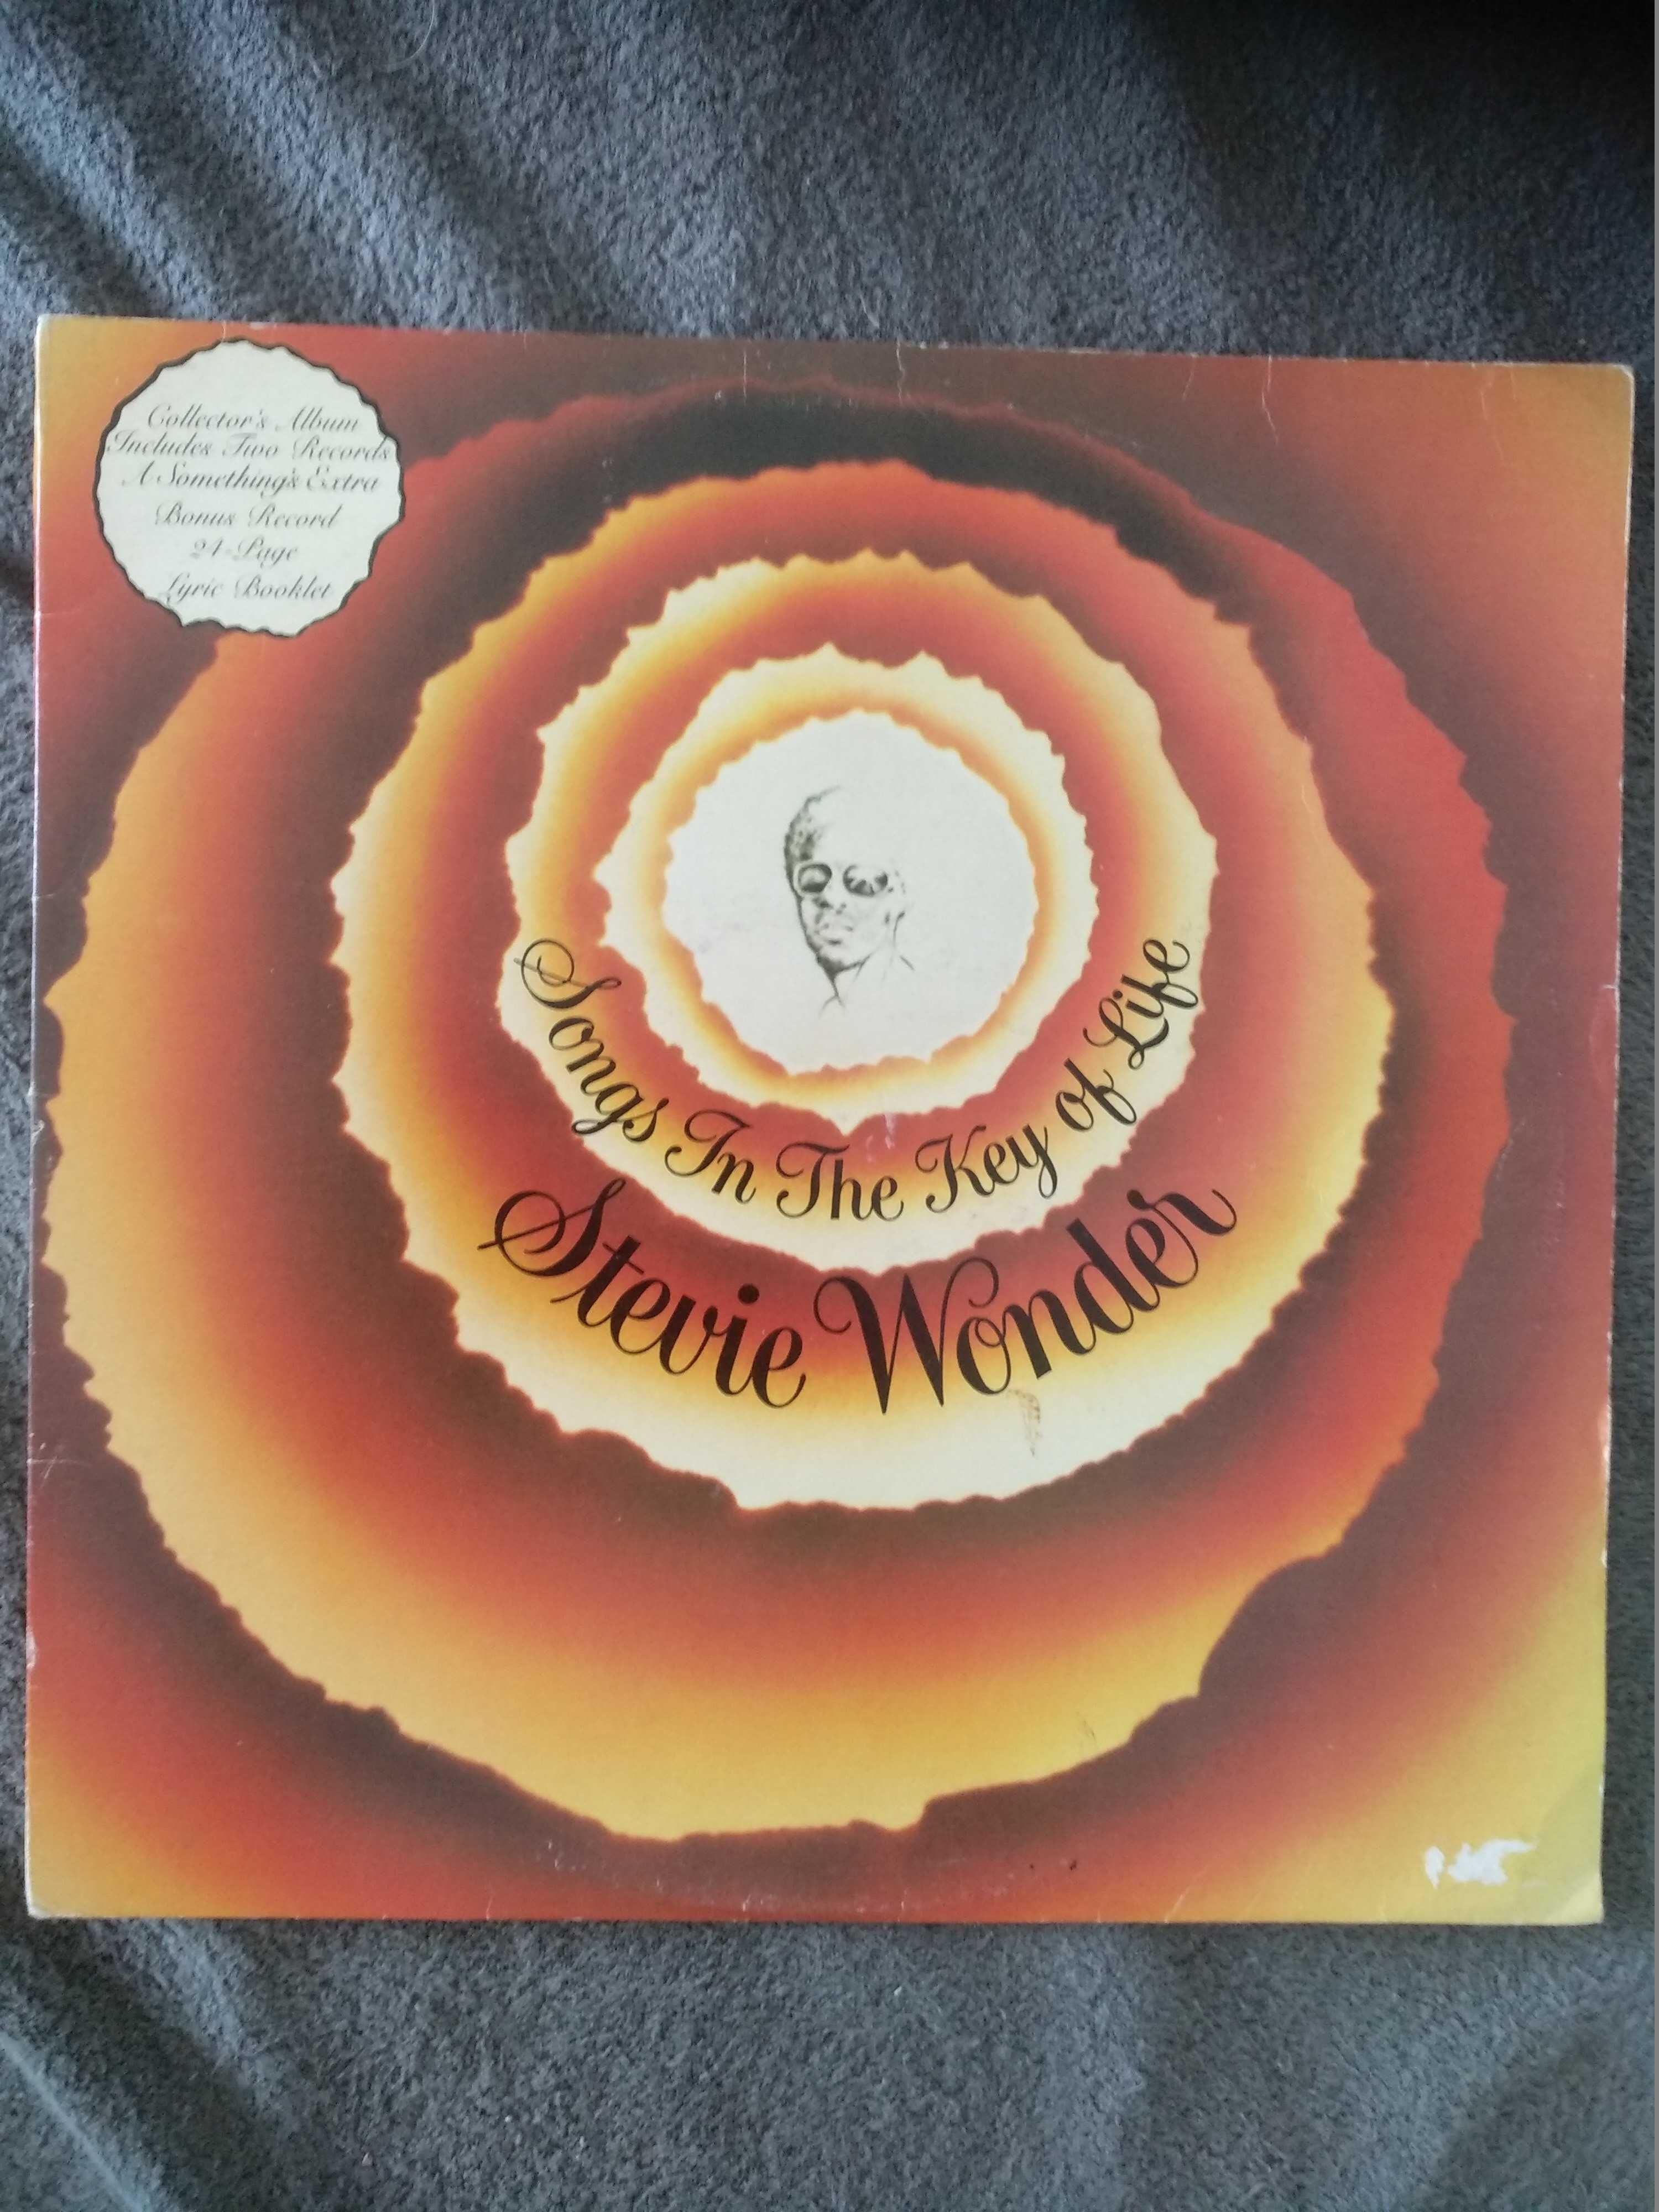 Stevie Wonder ‎– Songs In The Key Of Life